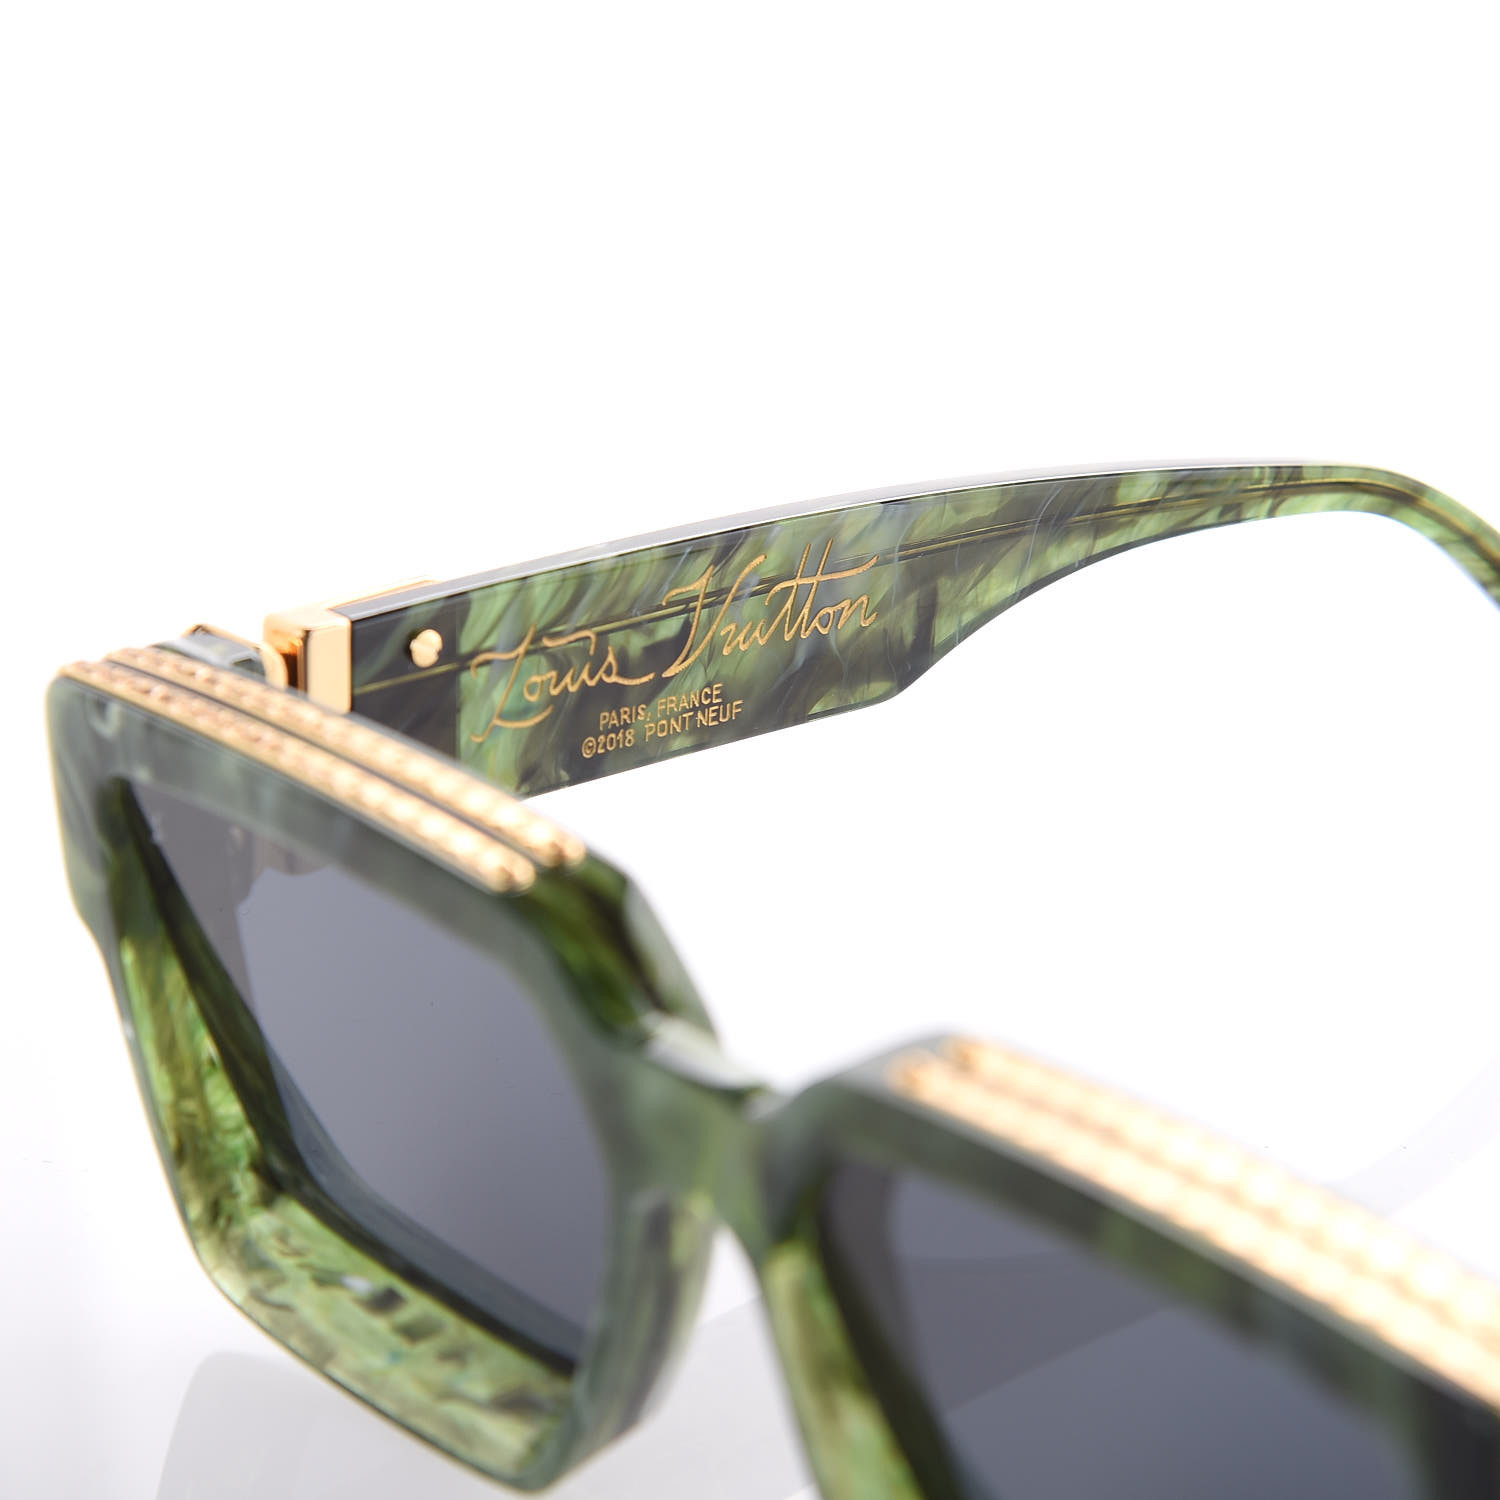 Louis Vuitton Millionaire 1.1 sunglasses Review #louisvuitton